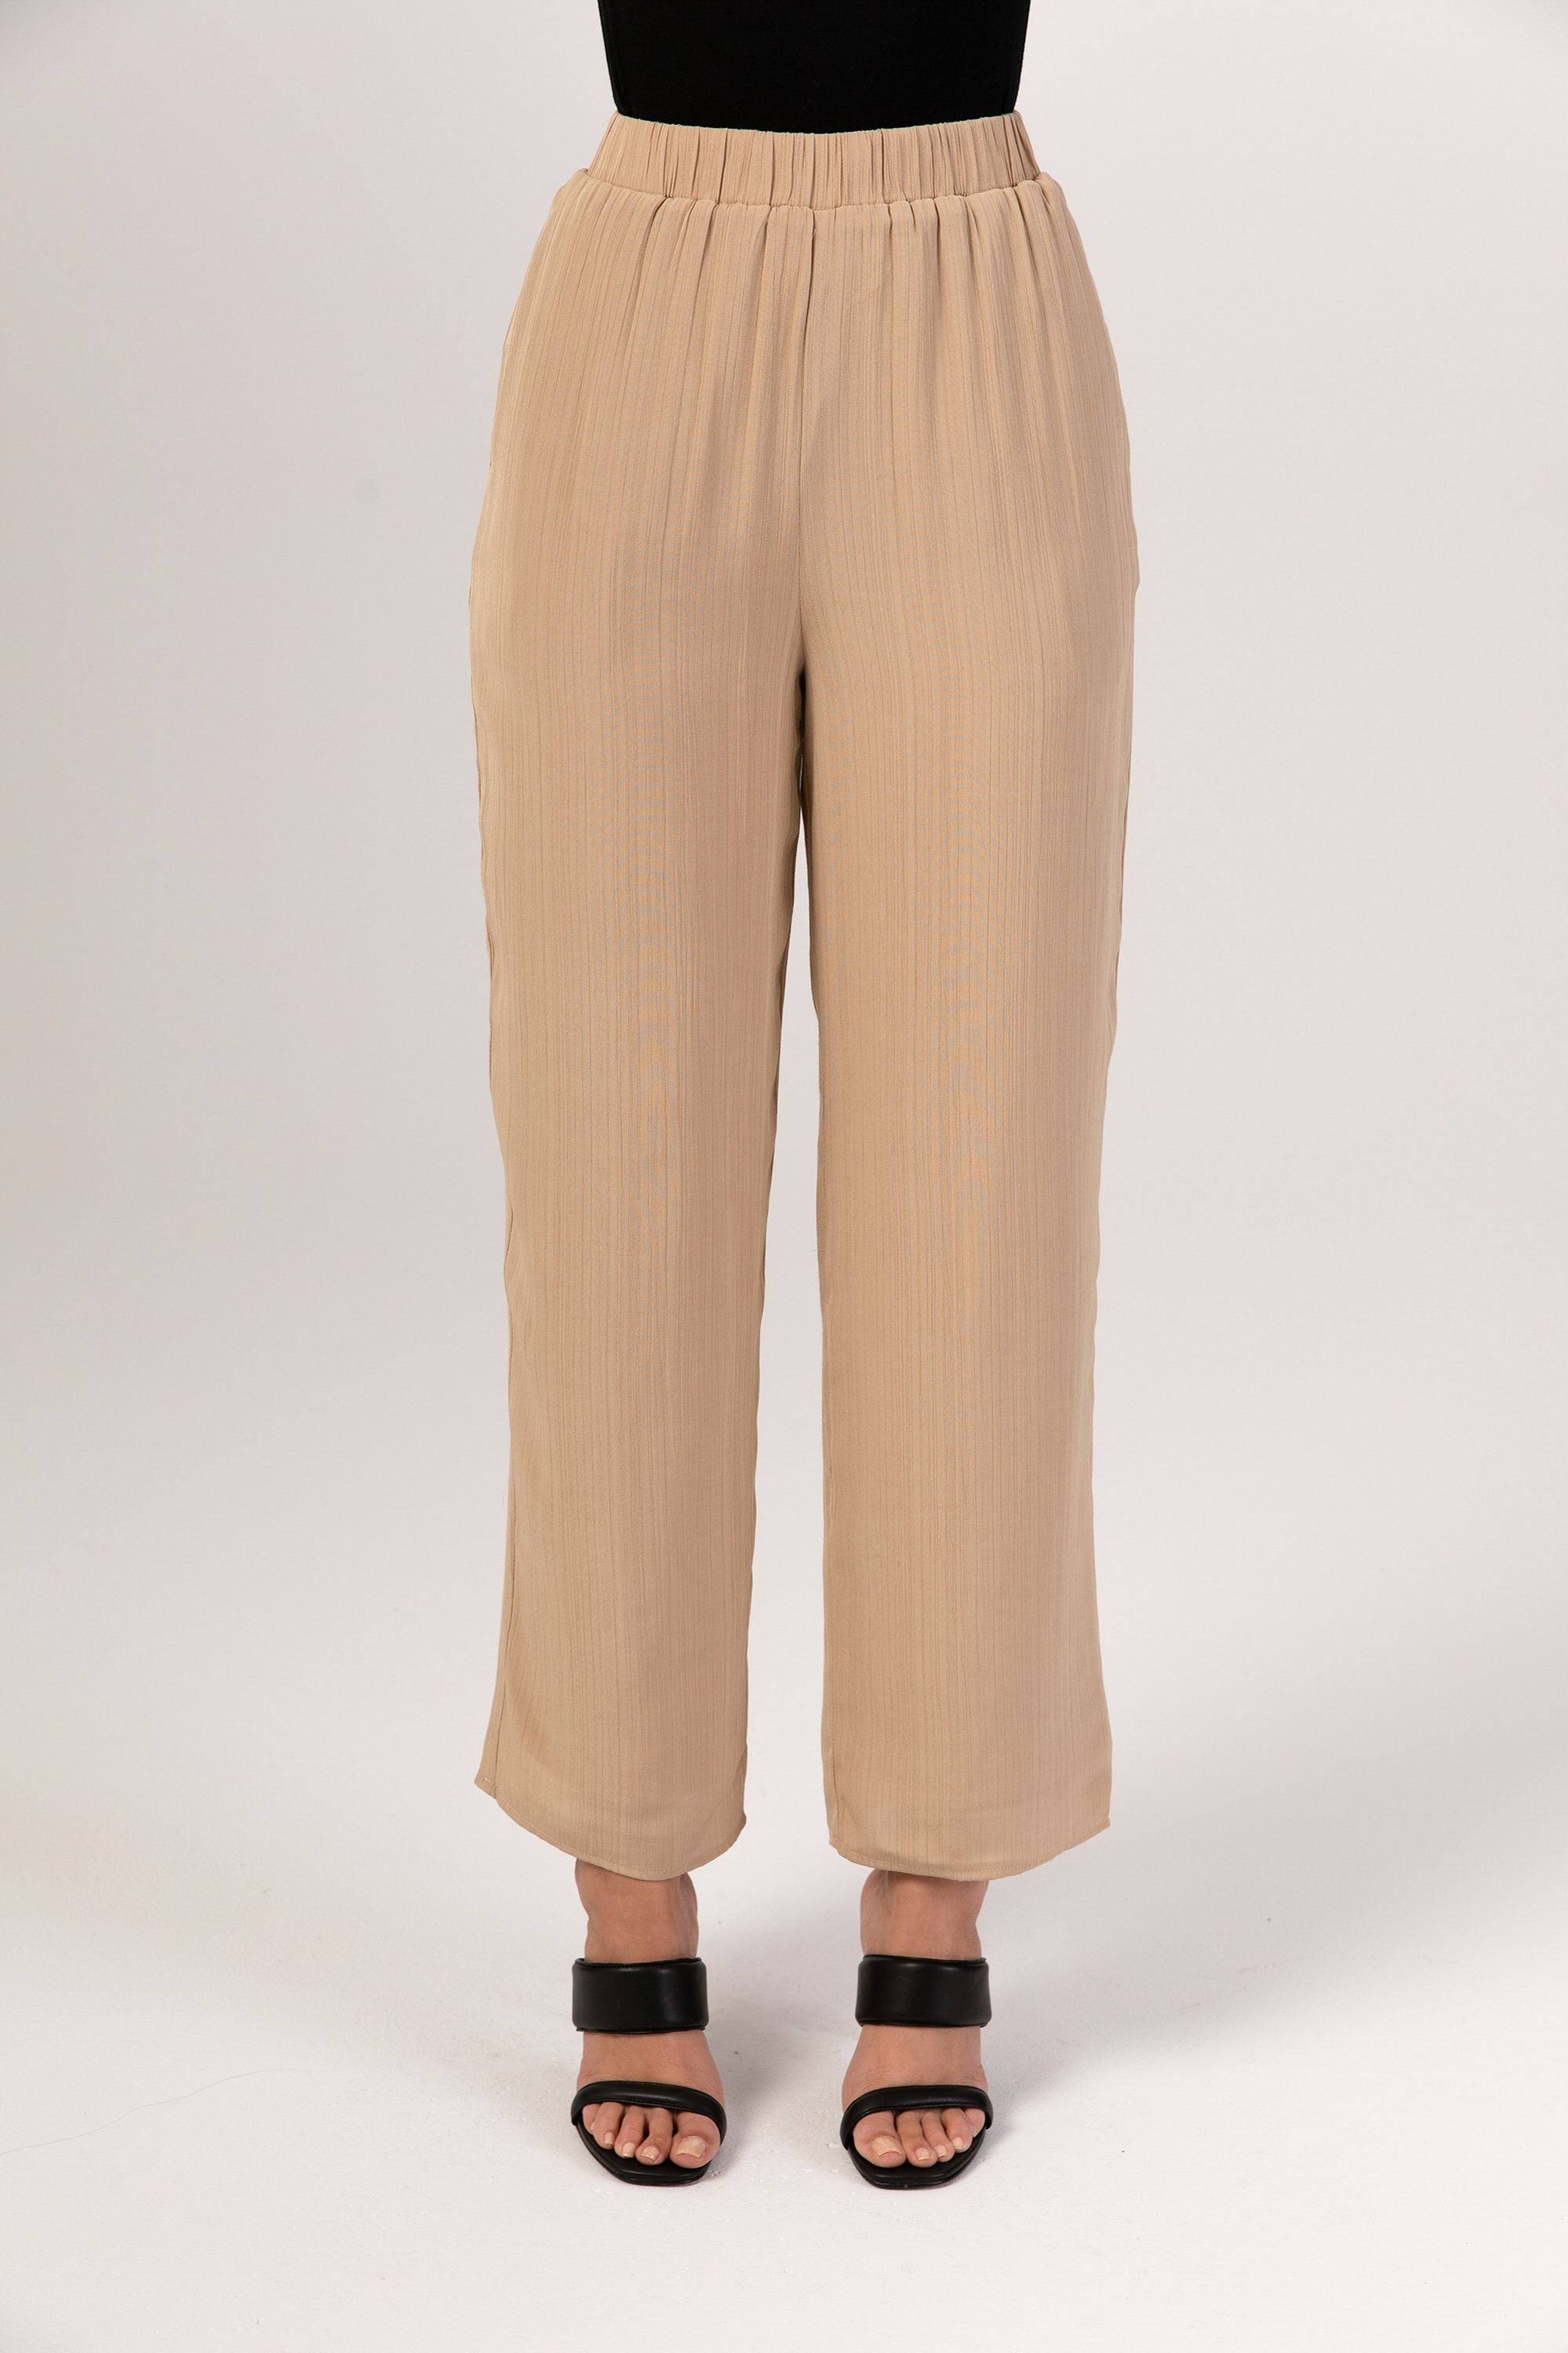 Nashwa Textured Rayon Wide Leg Pants - Caffe Veiled 